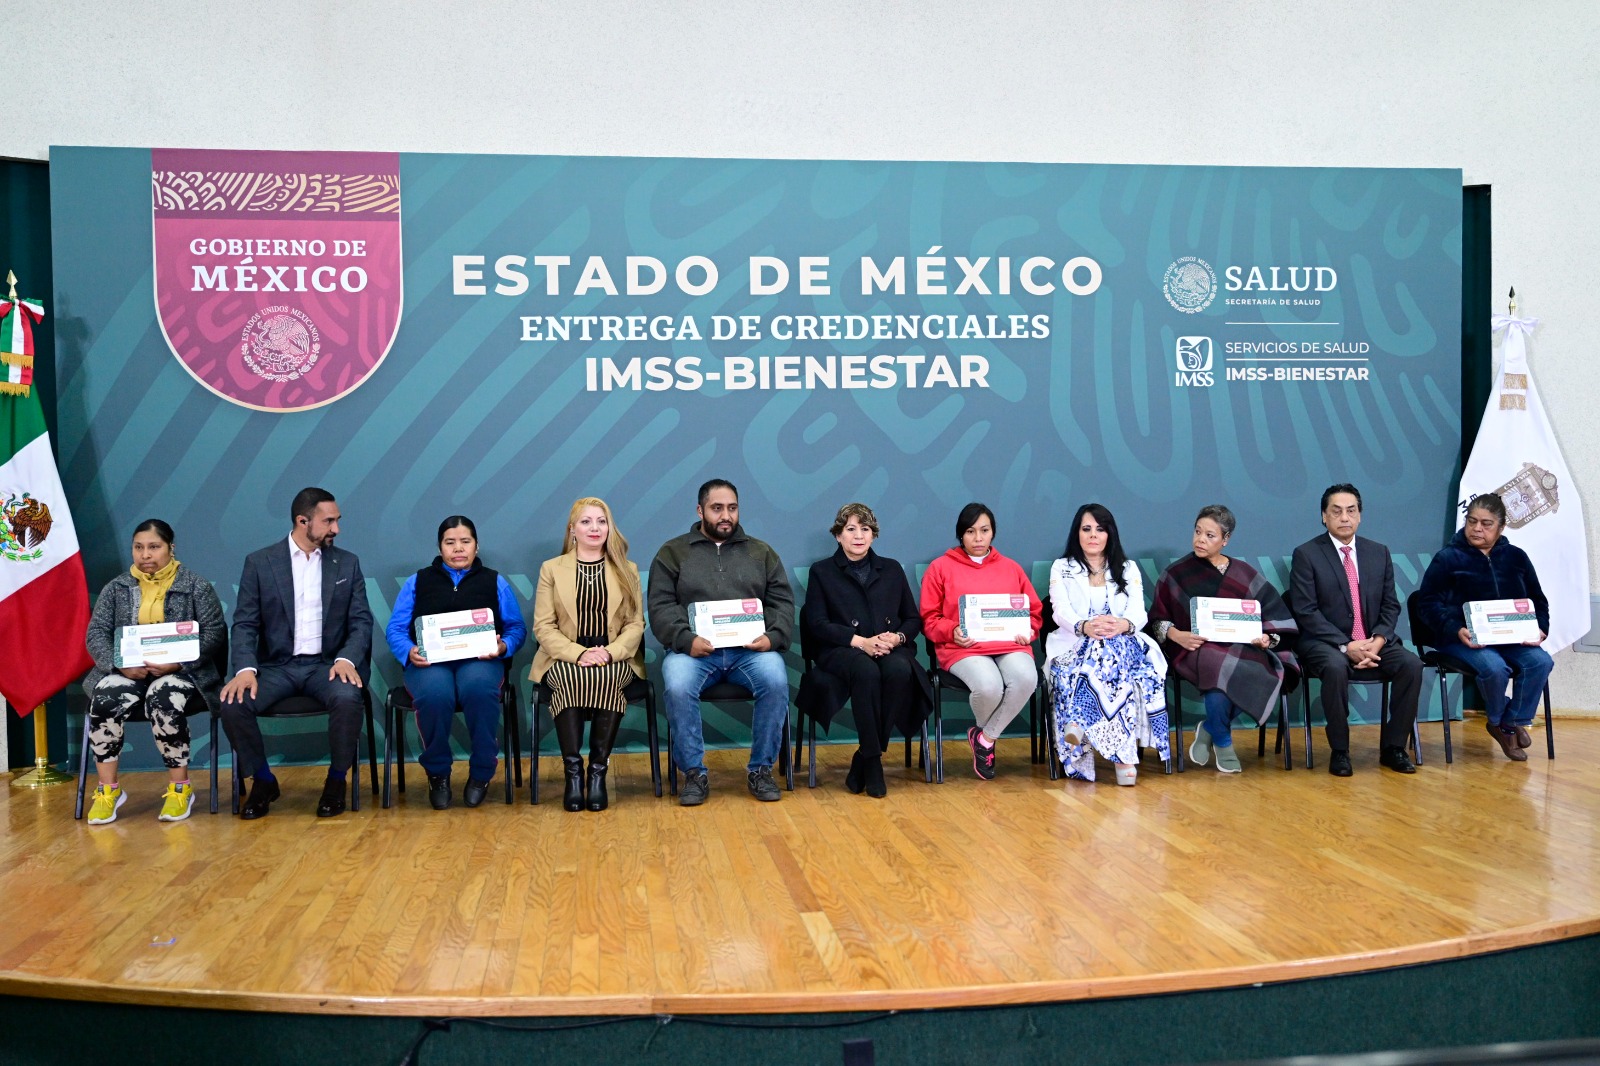 Con la credencial IMSS Bienestar, 9.1 millones de mexiquenses sin seguridad social podrán recibir atención médica sin costo en clínicas y hospitales del Estado de México.